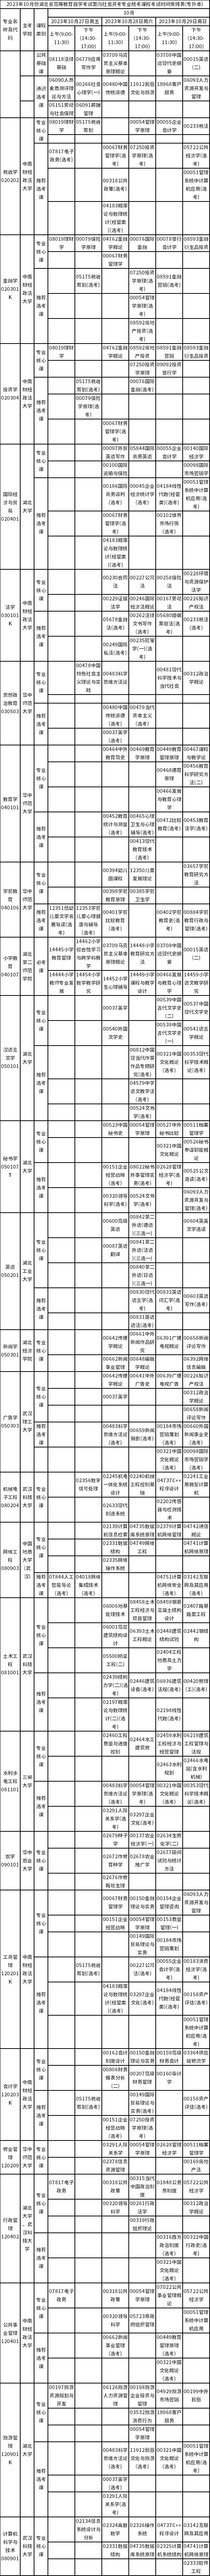 湖北省2023年10月自学考试面向社会开考专业统考课程考试安排表